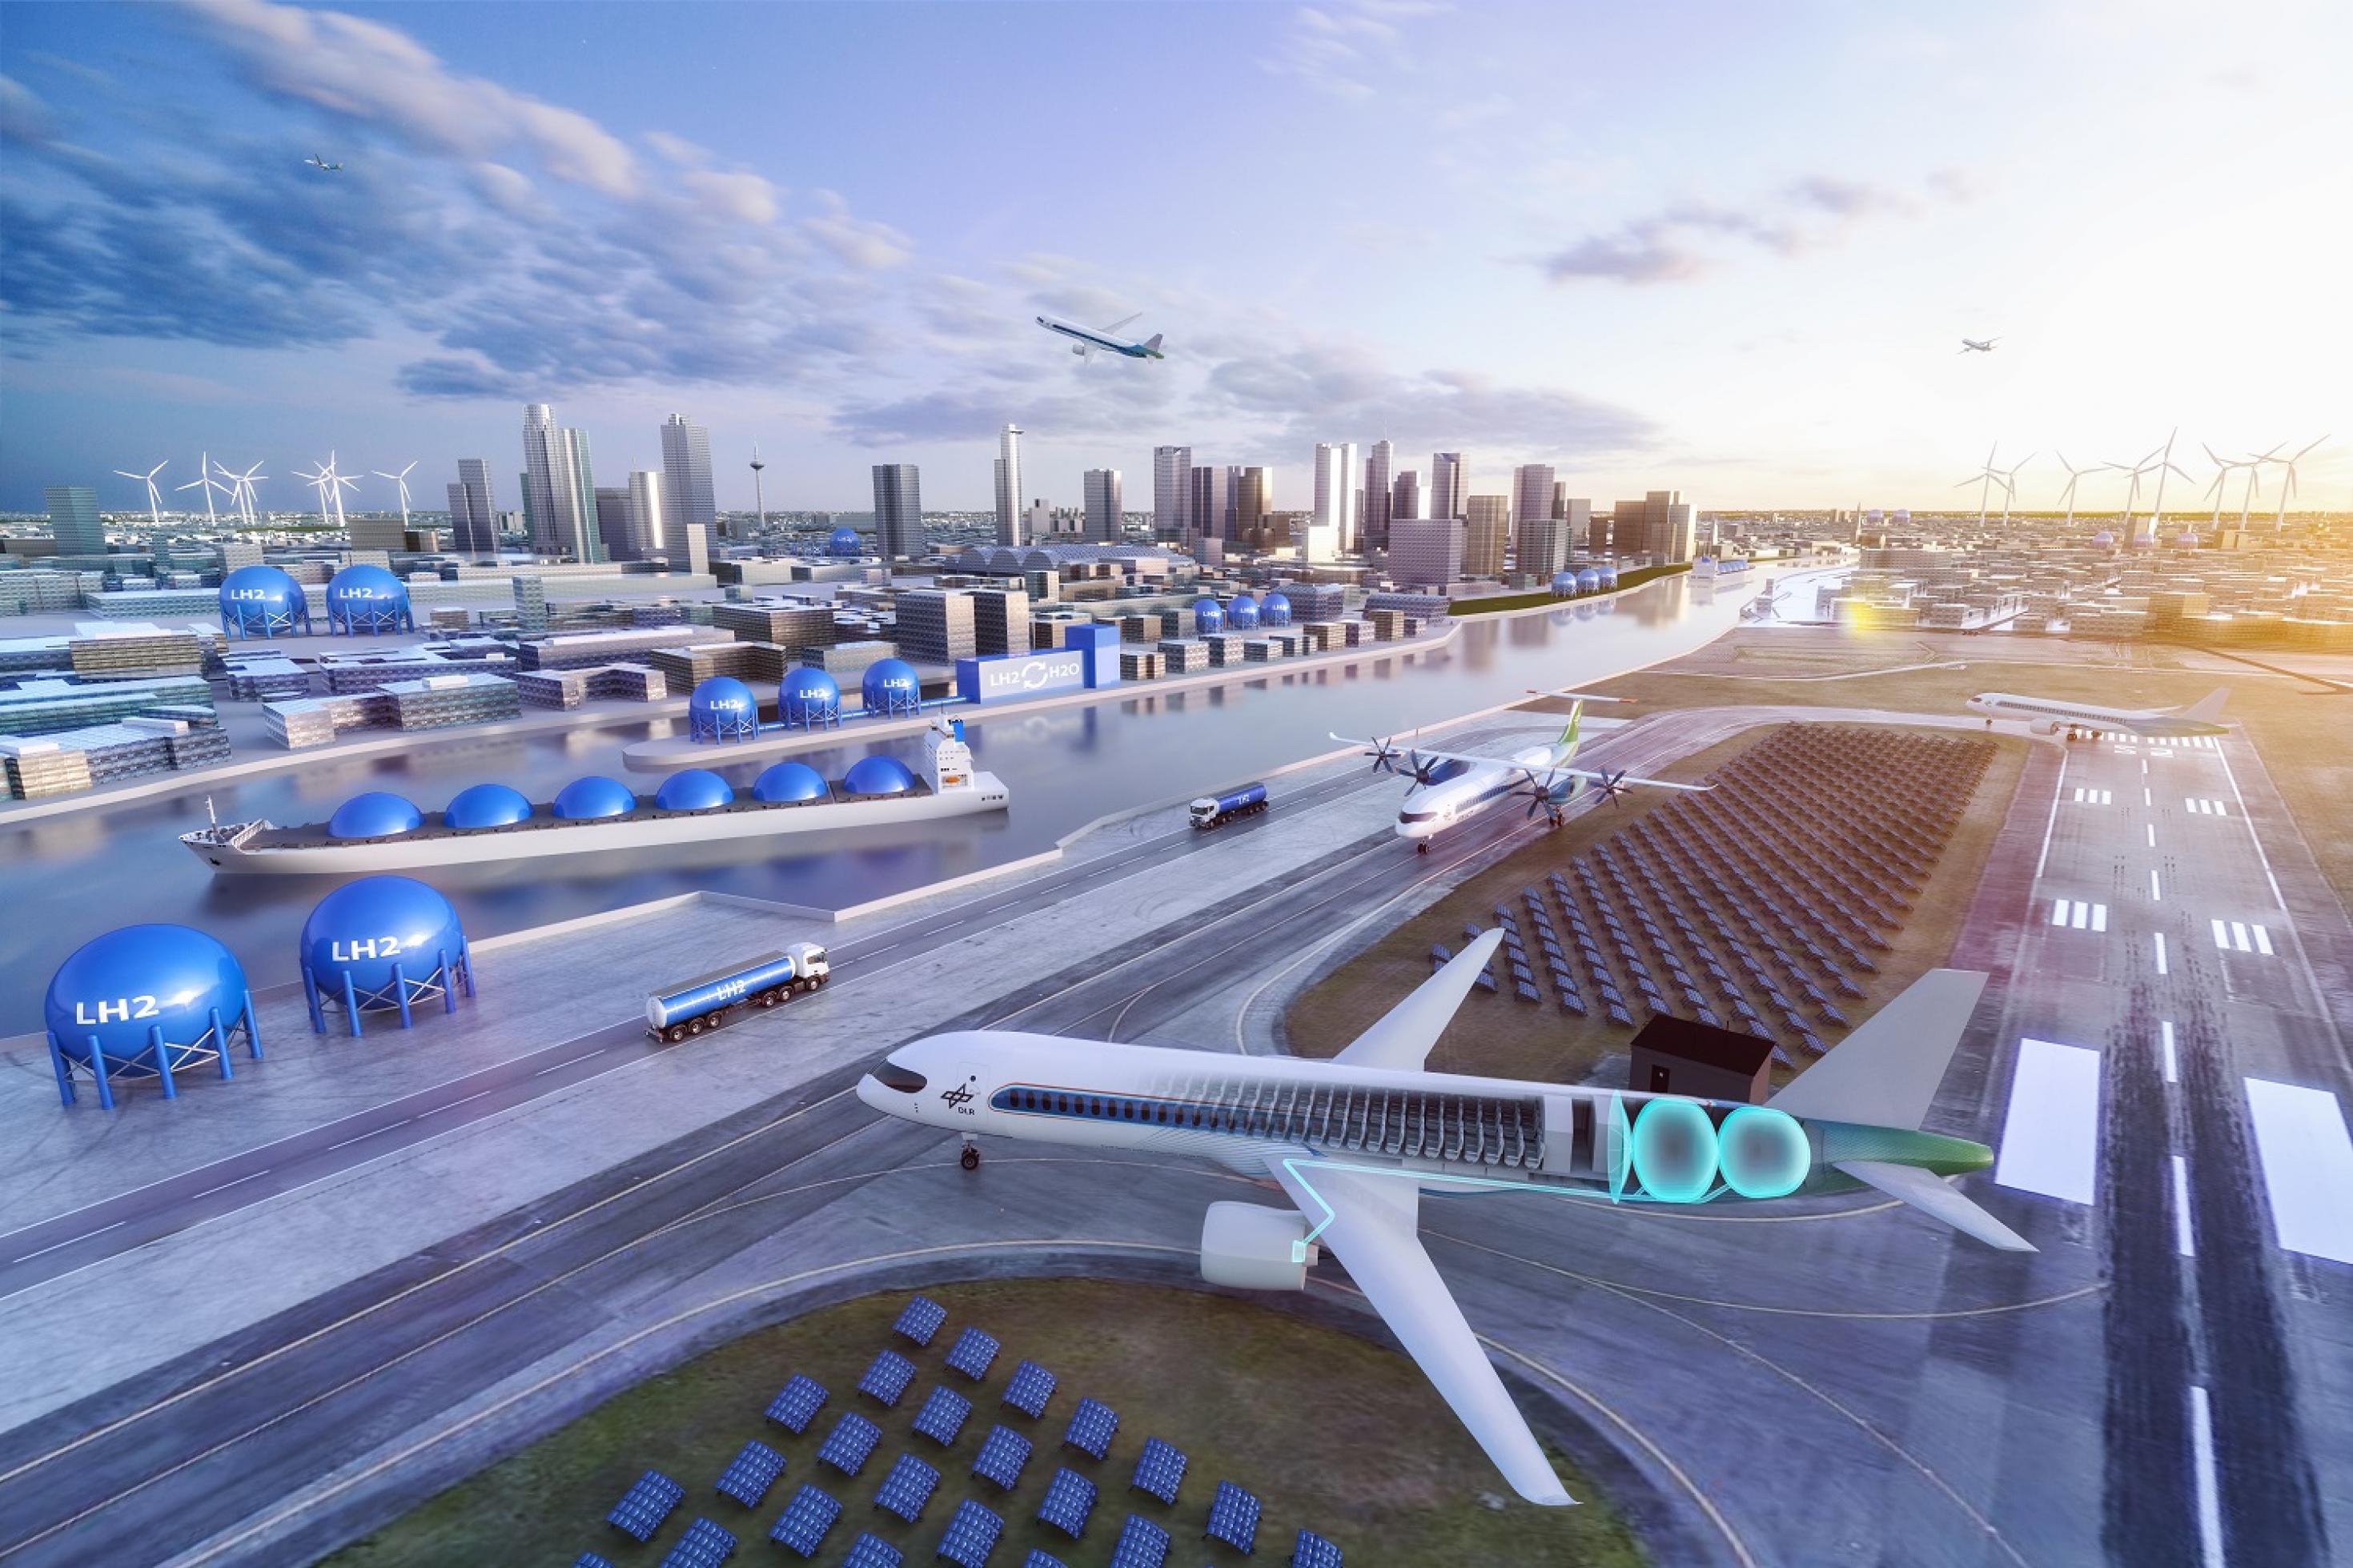 Modell eines künftigen Flughafens mit einem Wasserstoffflugzeug im Vordergrund, erkennbar am kugeligen Treibstofftank im Heck.